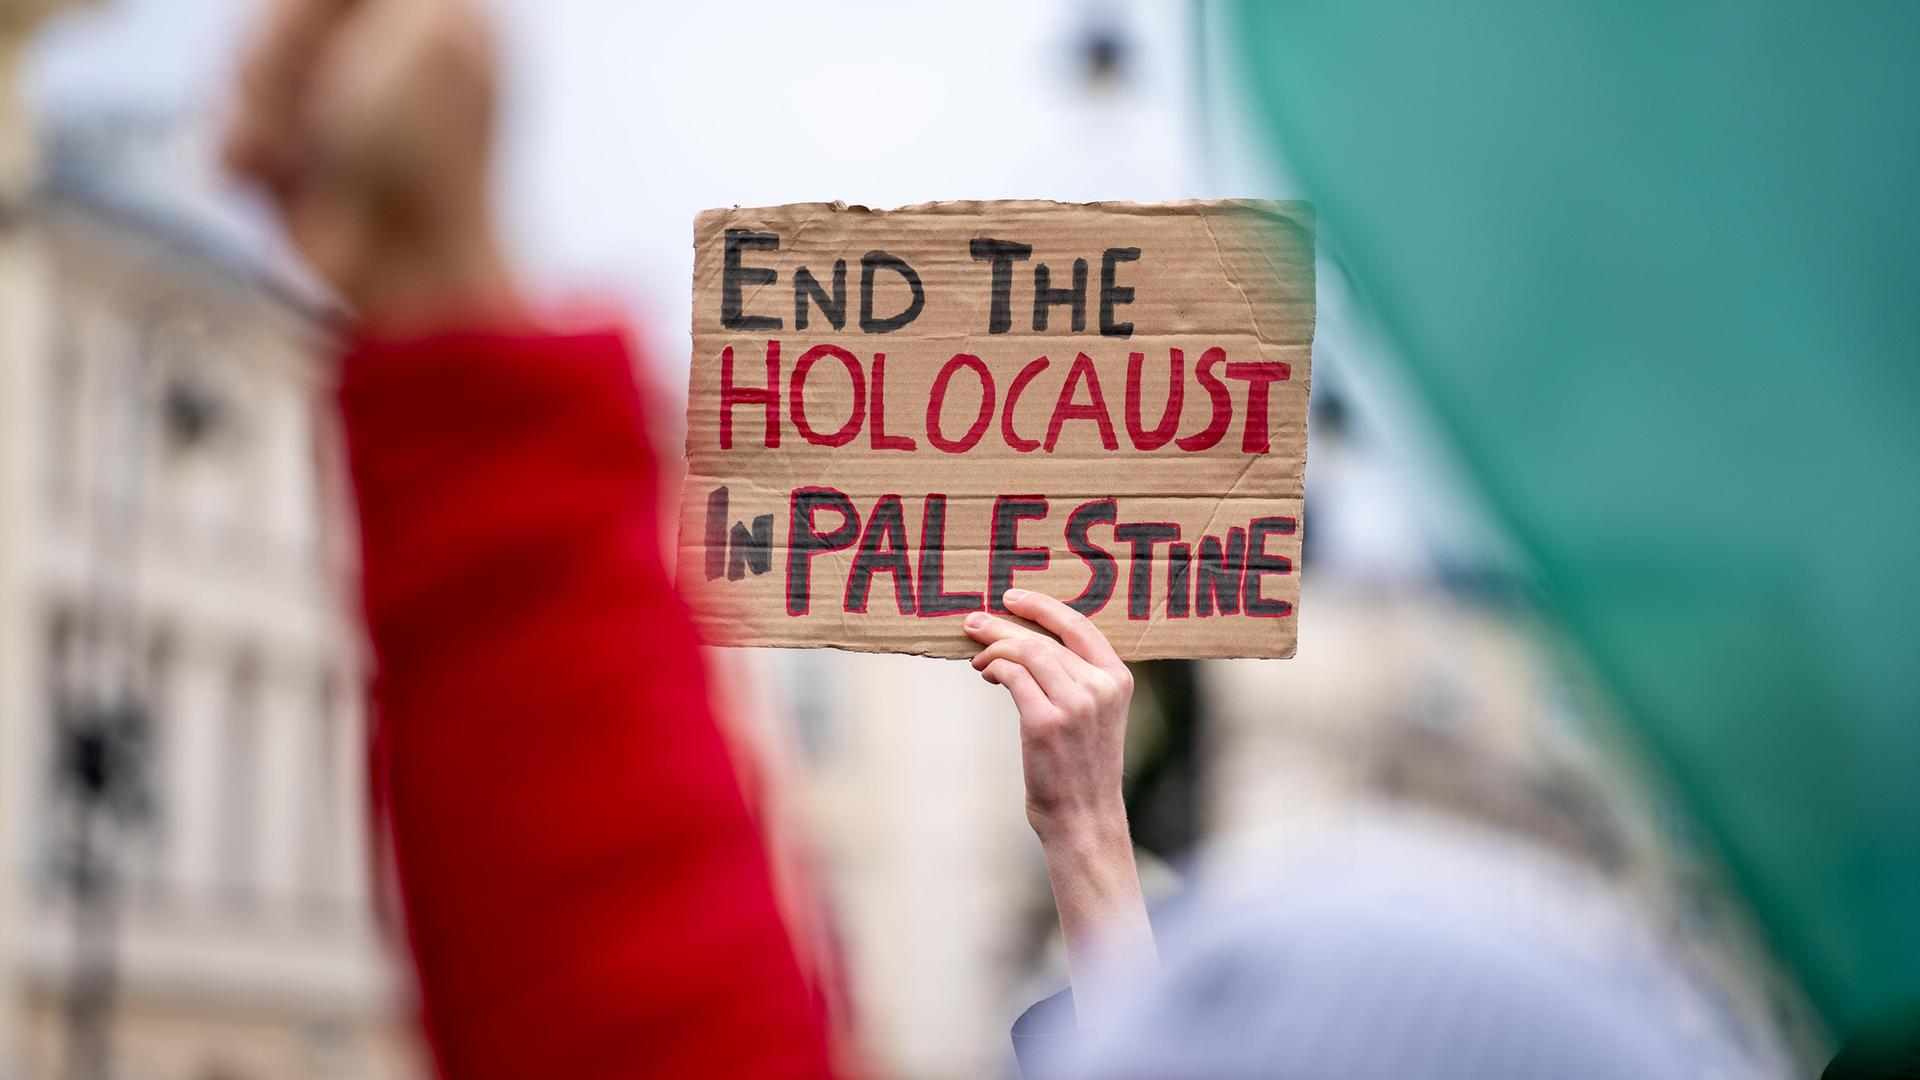 Eine Hand hält ein Schild mit der Aufschrift "Beendet den Holocaust in Palästina" bei einer Demonstration in die Höhe.